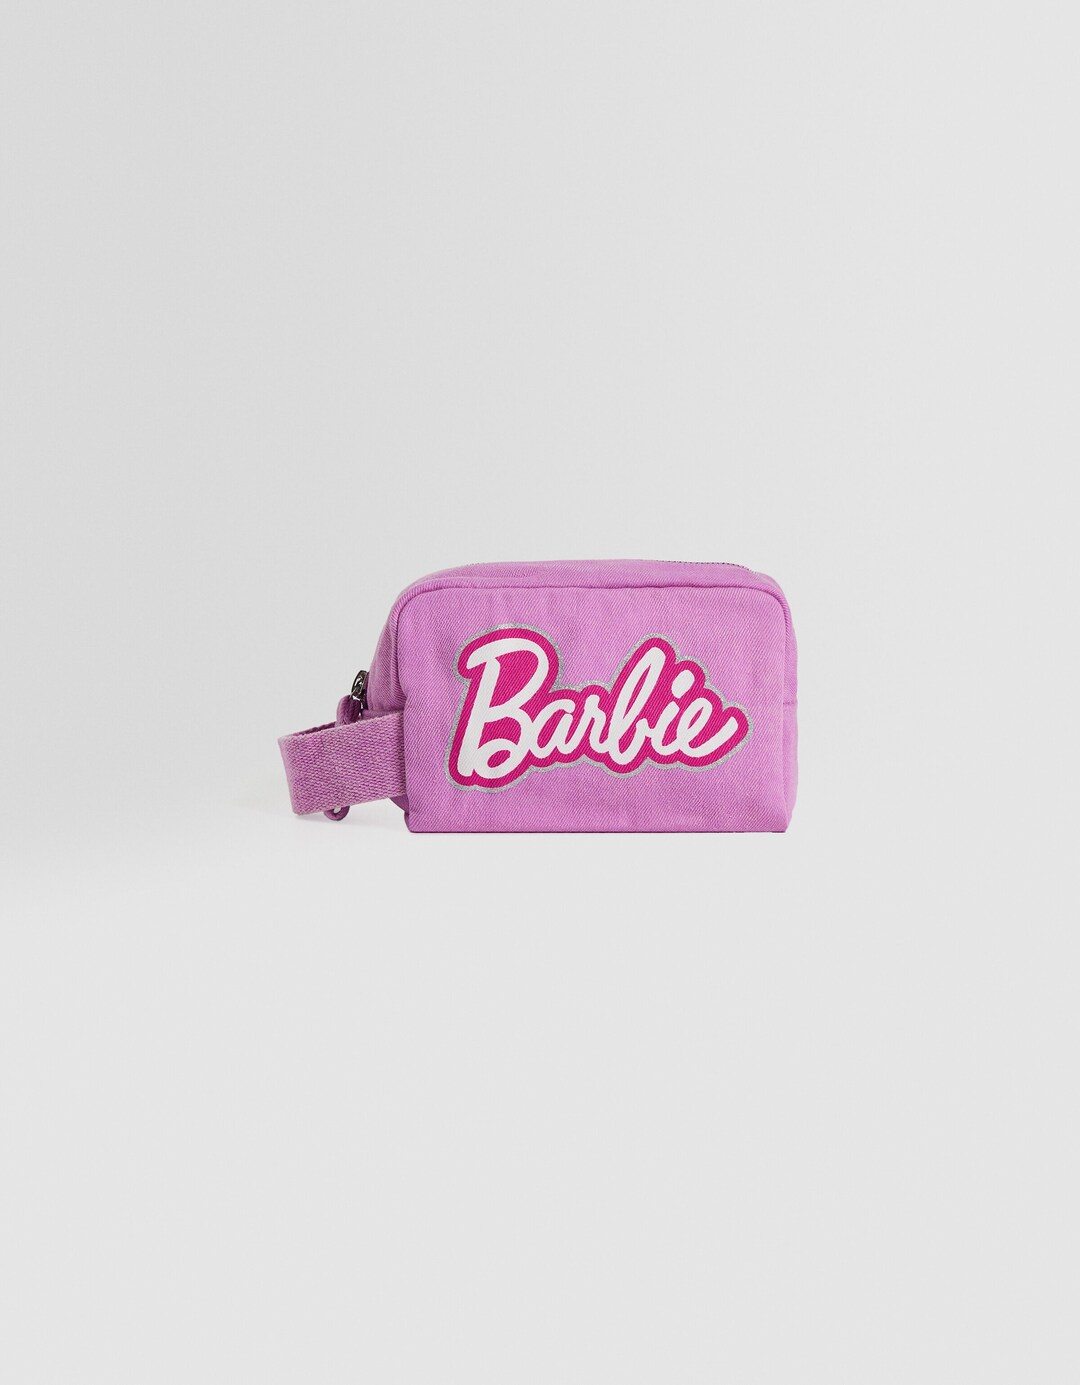 Barbie toiletry bag